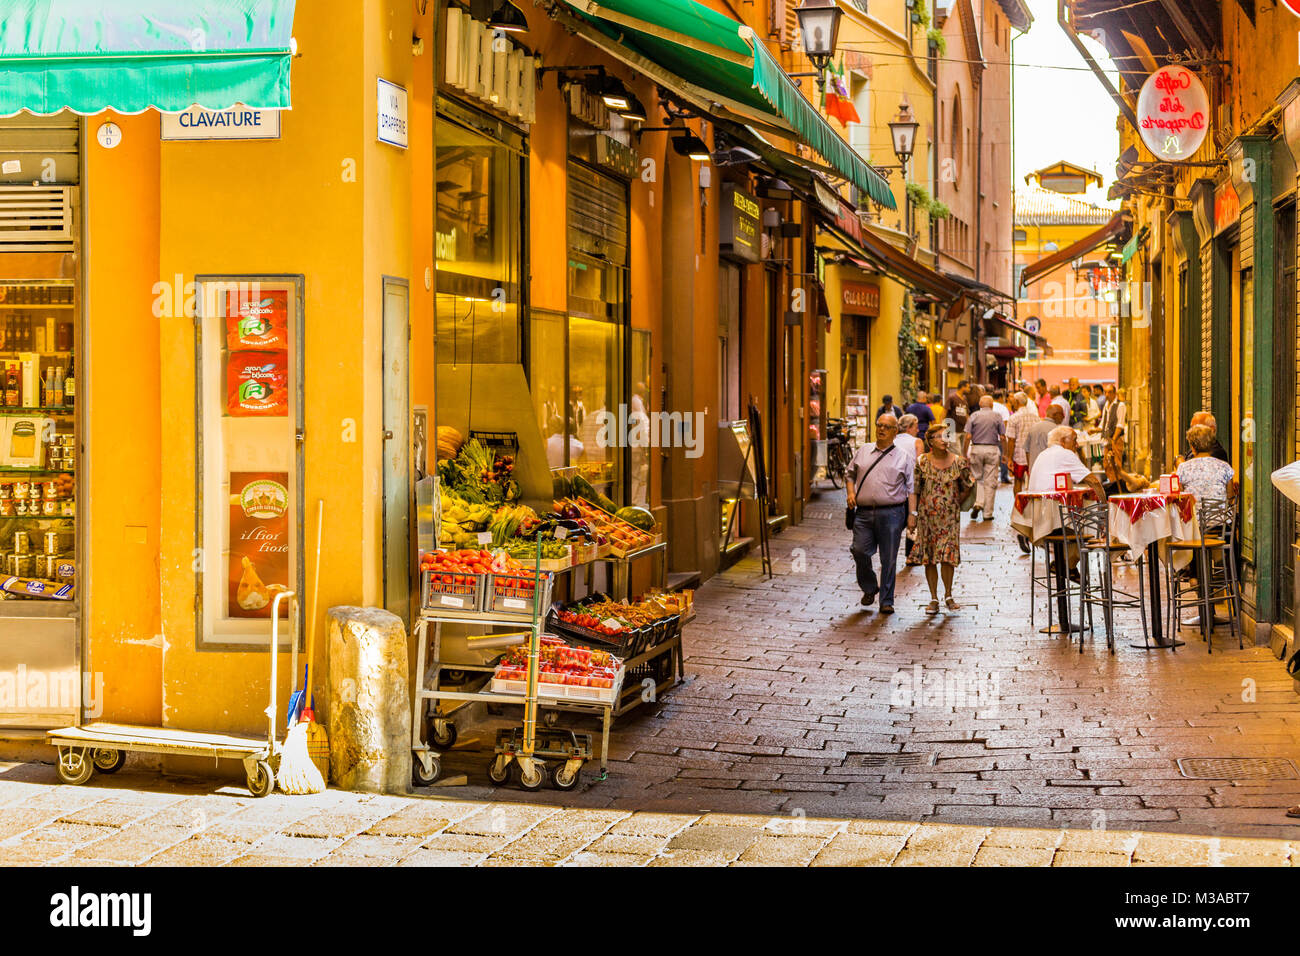 BOLOGNA, Italien - 27. AUGUST 2016: Touristen und Einheimische einkaufen gehen in der mittelalterlichen Markt. Die Berufung dieser Gegend bekannt als Quadrilatero, Mittelwert Stockfoto